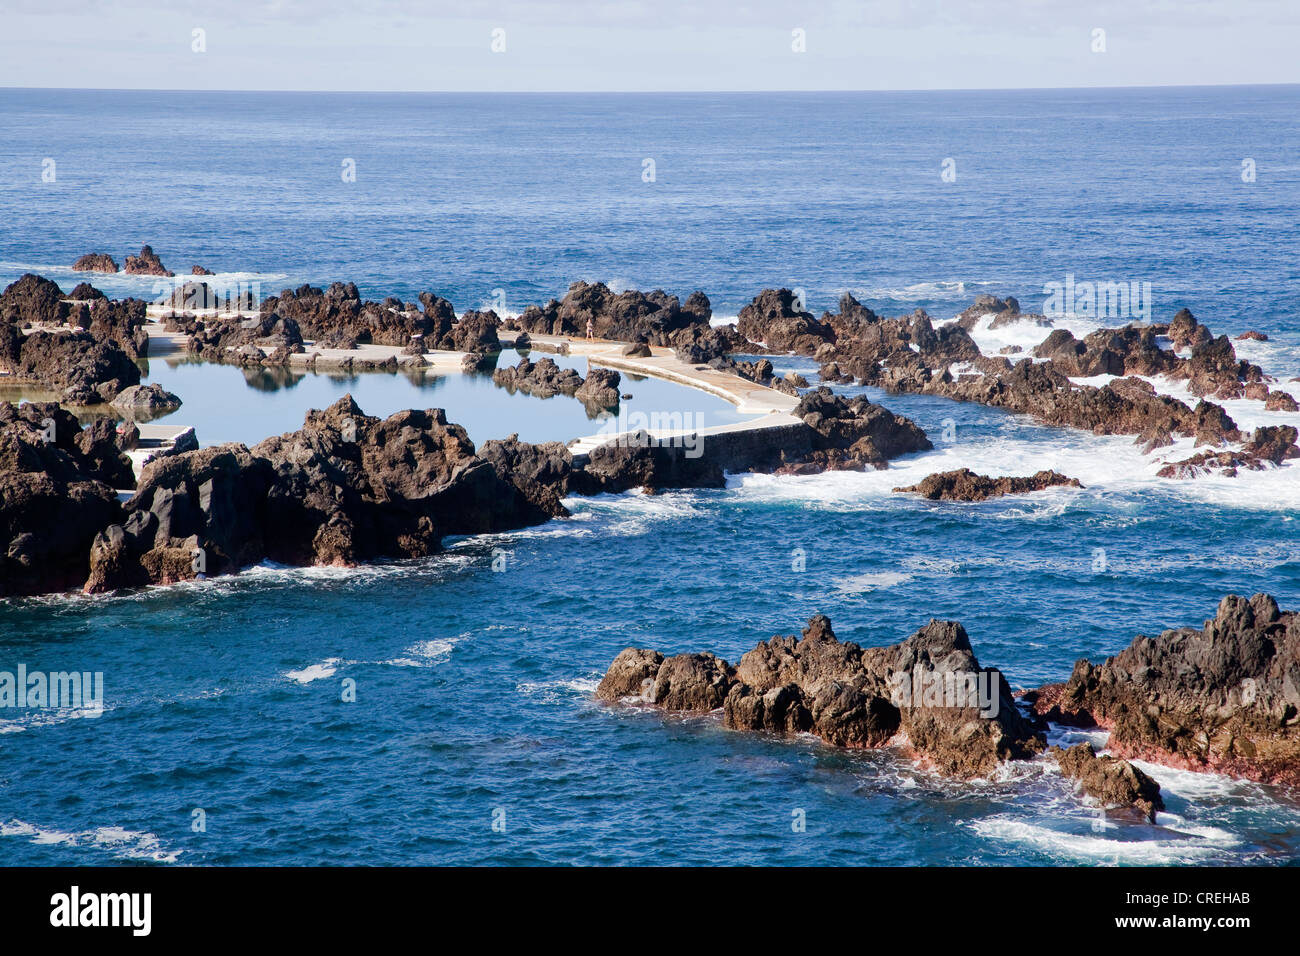 L'eau de mer extérieure entourée de roches de lave dans l'Atlantique, à Porto Moniz, Madeira, Portugal, Europe Banque D'Images